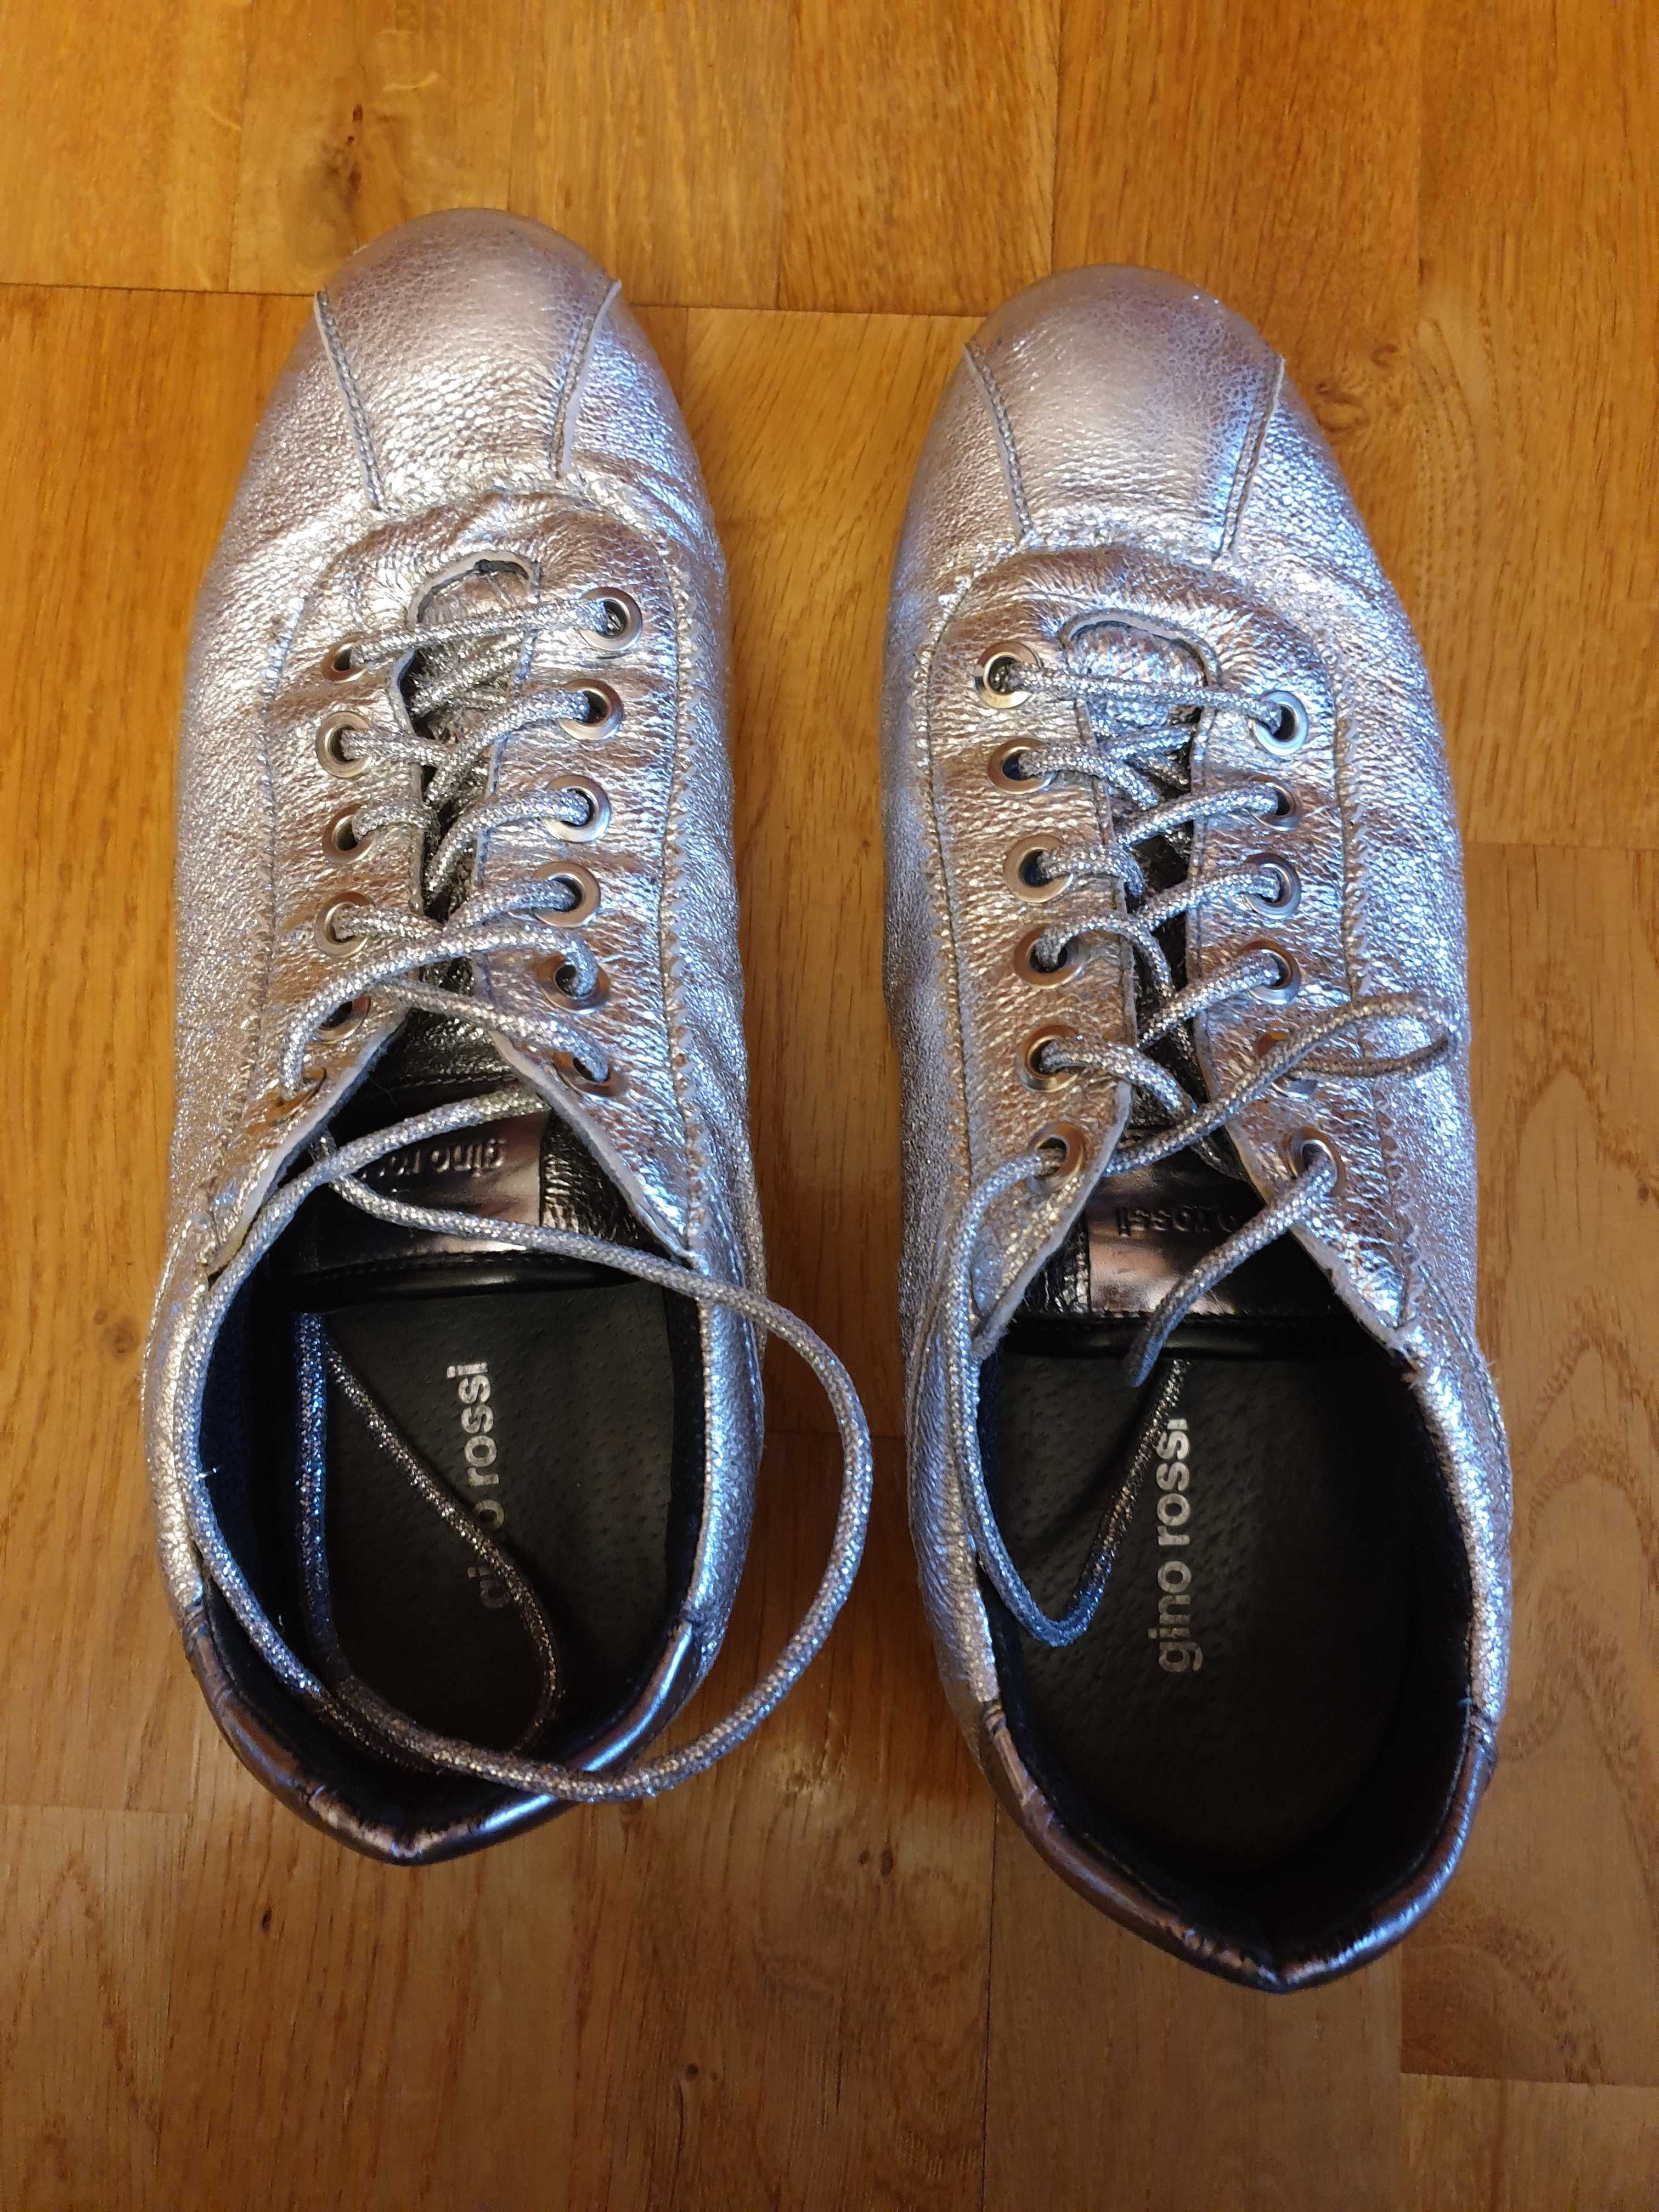 Buty sneakersy srebrne, Gino Rossi 37, skóra,  sznurowane